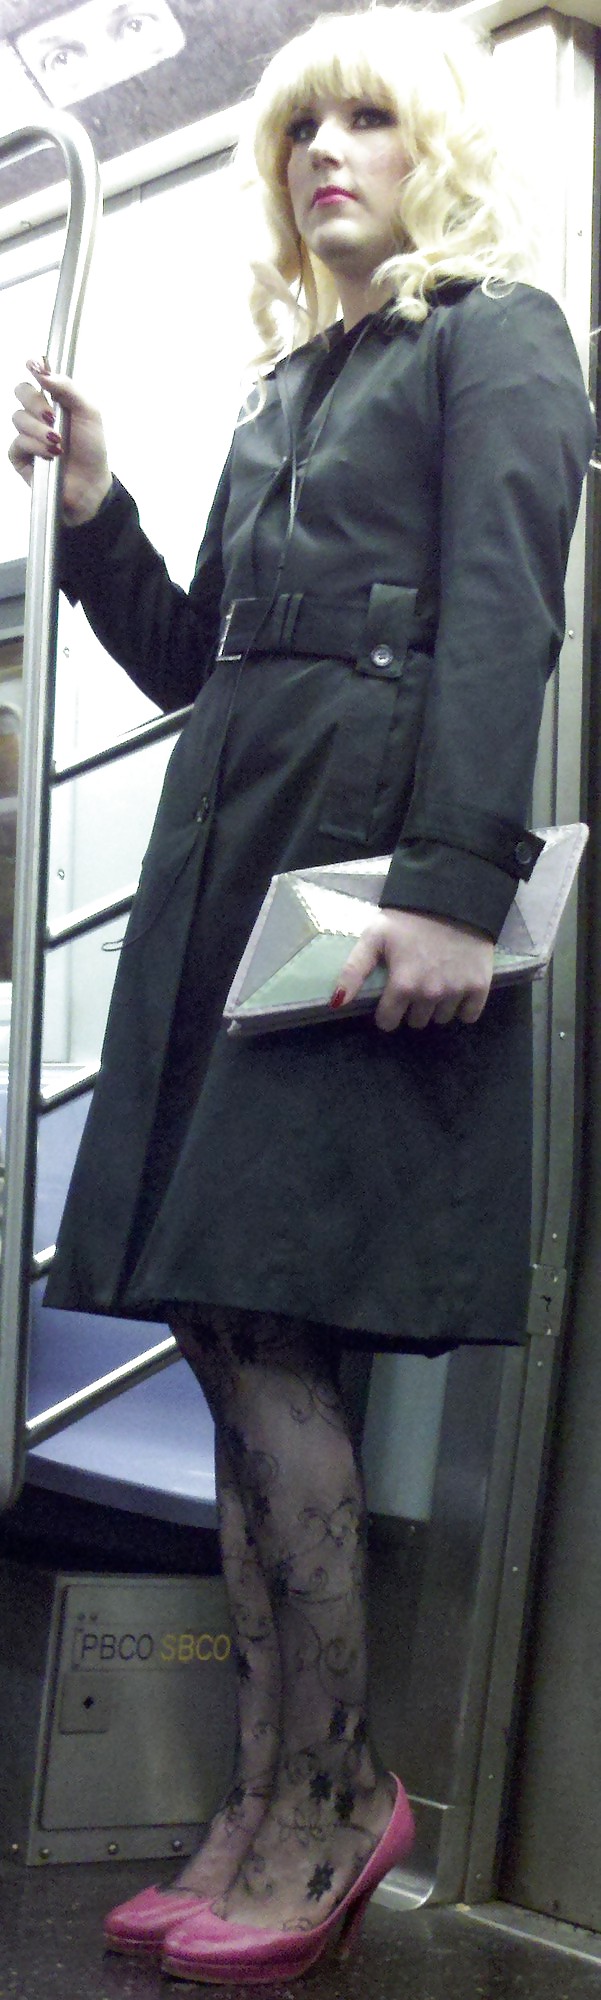 ニューヨークの地下鉄の女の子 107 dude looks like a lady
 #6603924